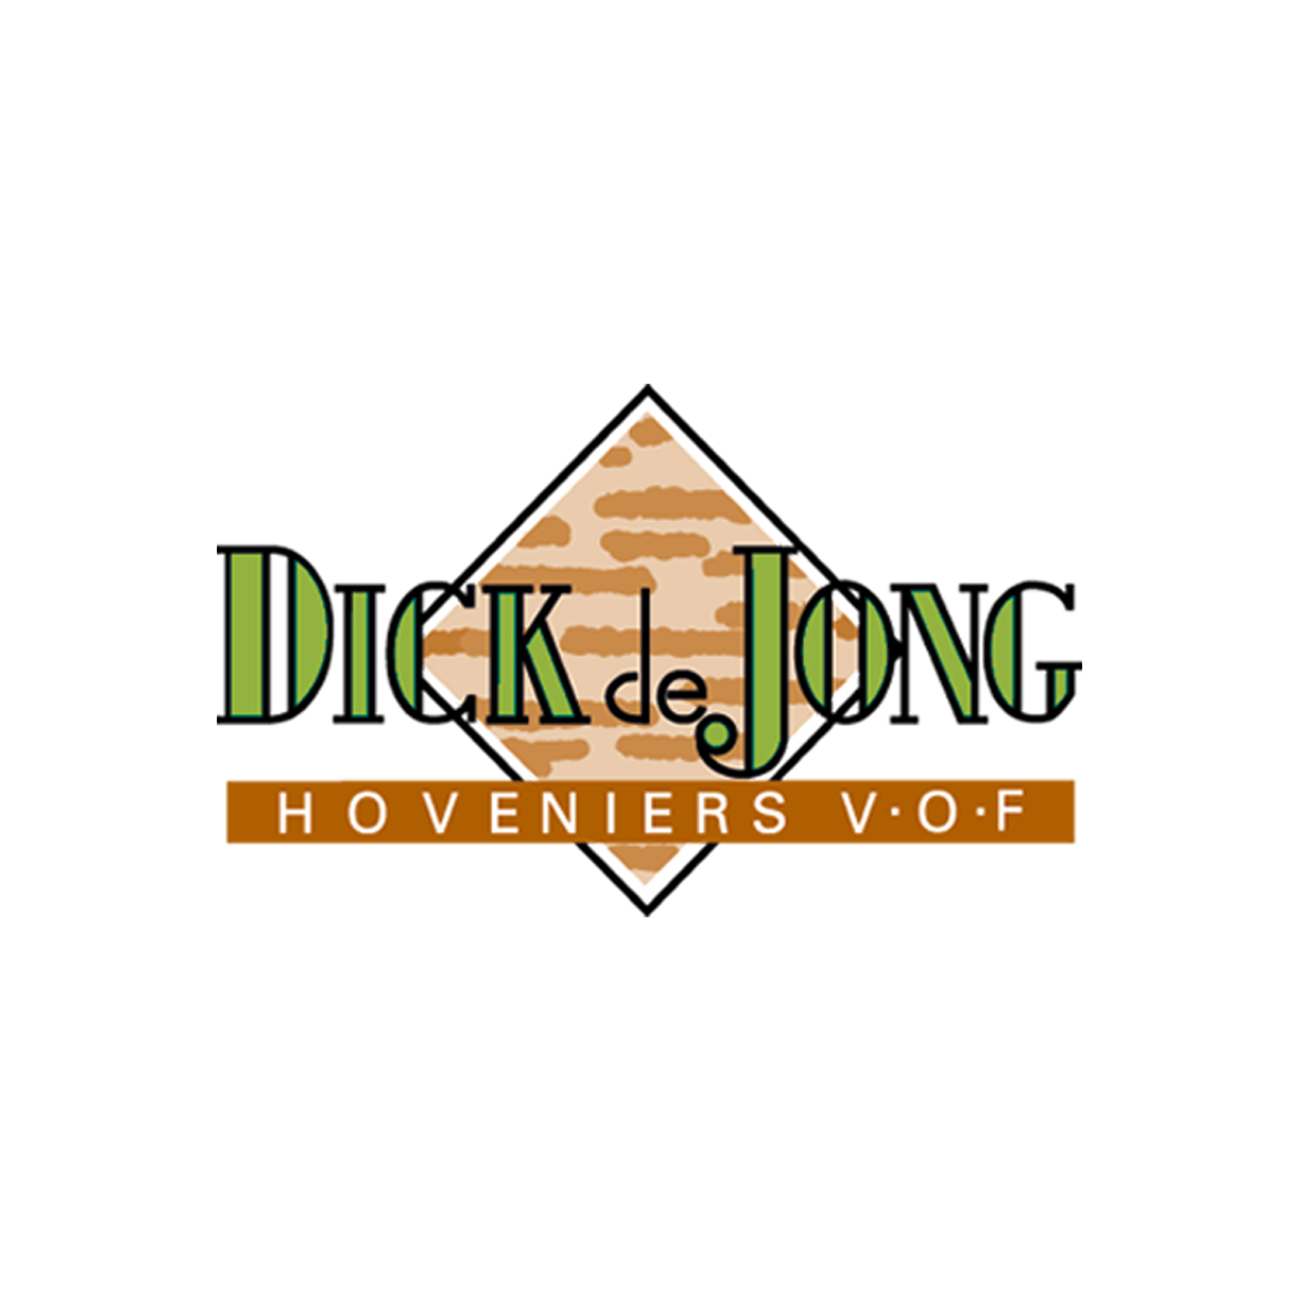 Dick de Jong hoveniers is Capabel